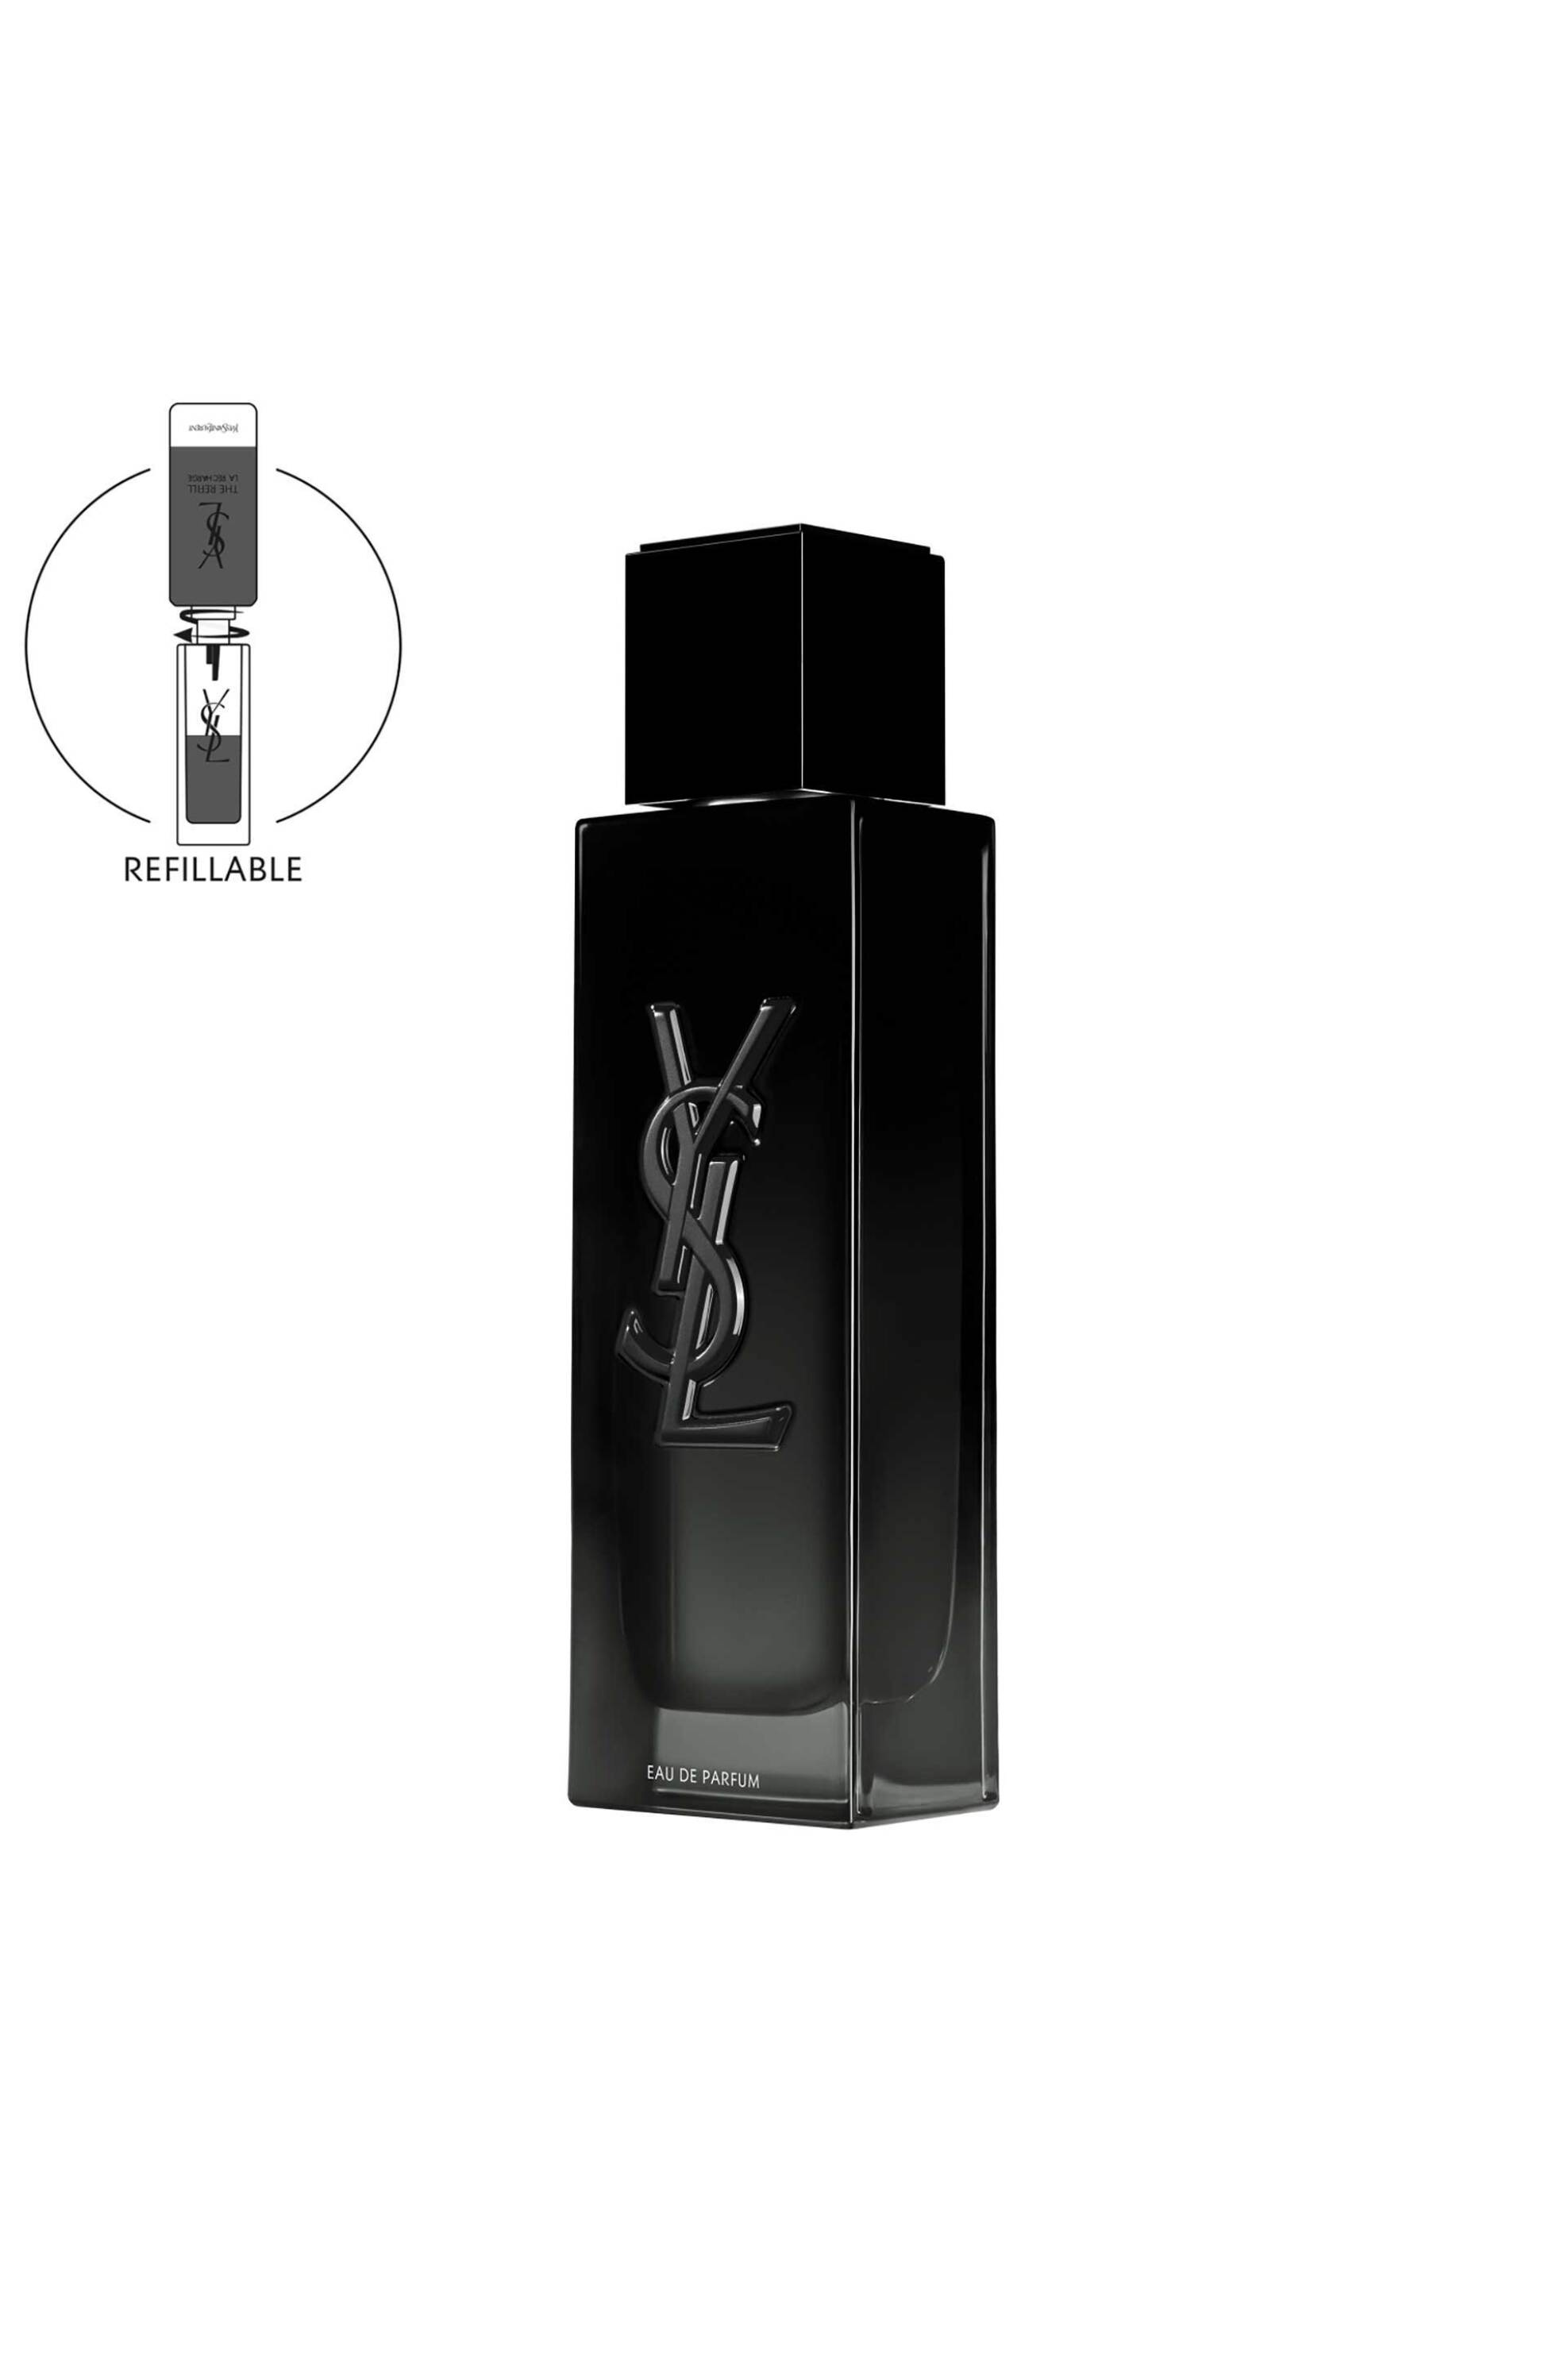 Προϊόντα Ομορφιάς > ΑΡΩΜΑΤΑ > Ανδρικά Αρώματα > Eau de Parfum - Parfum Yves Saint Laurent Myslf Eau de Parfum - 3614273852821